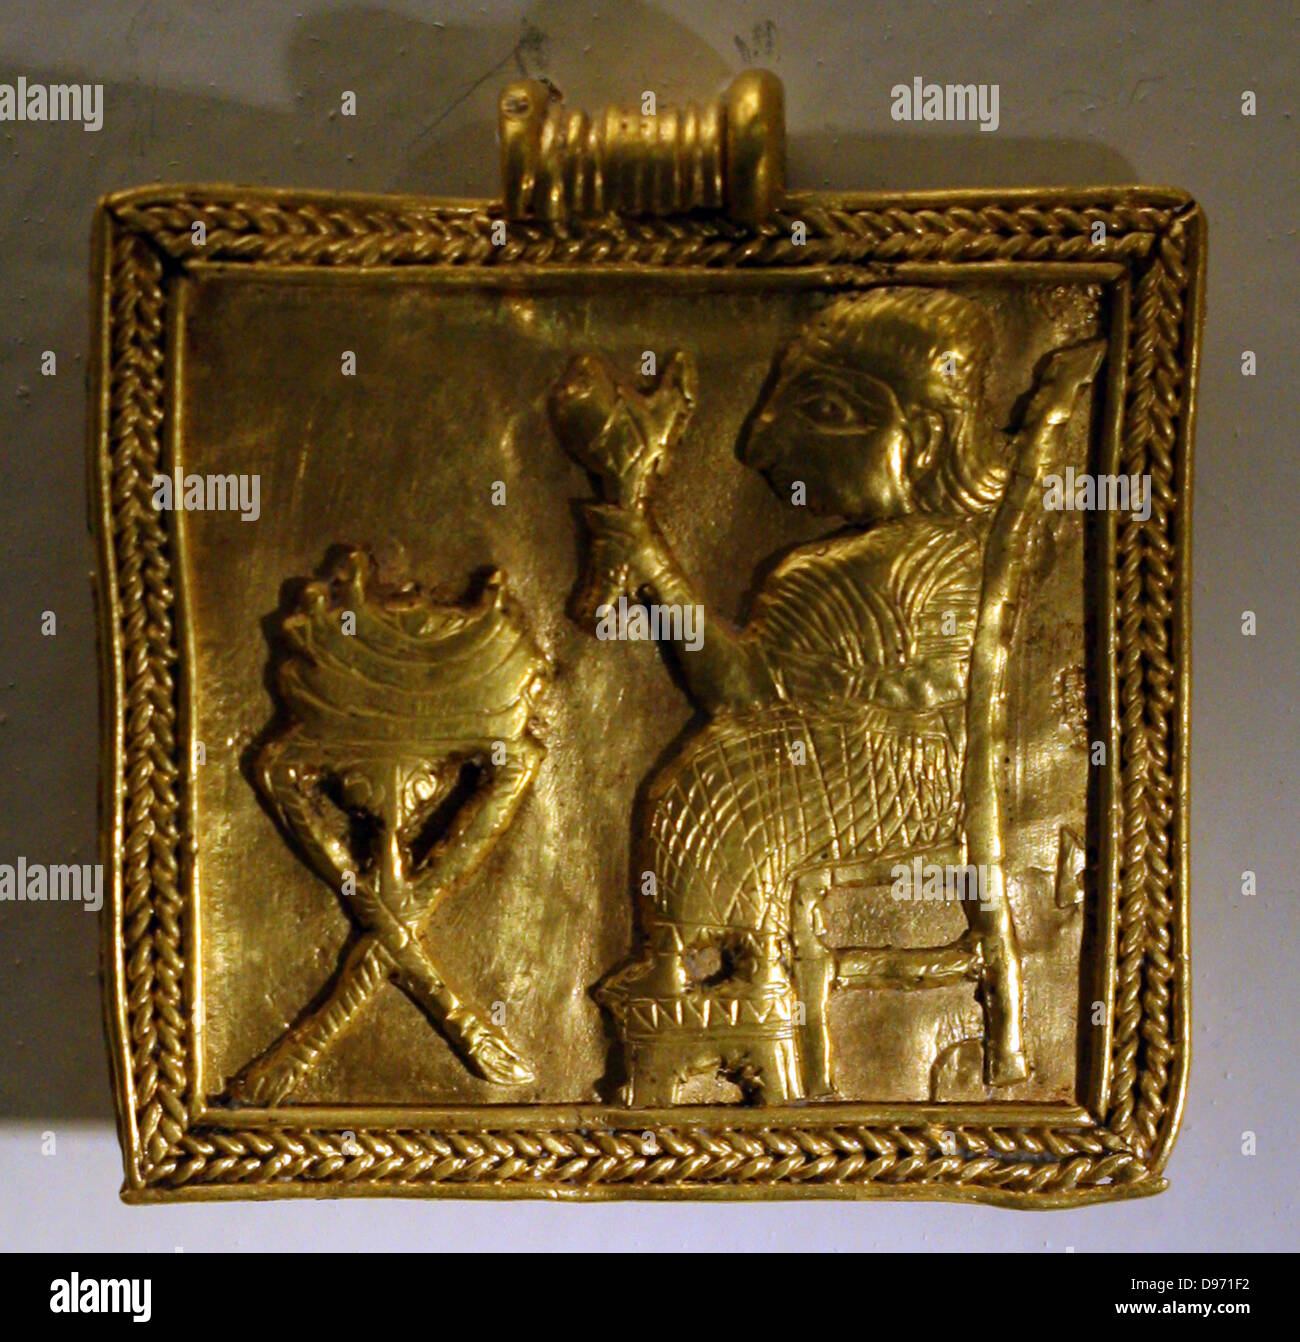 The Pharaoh's Gold Fringe Top in Gold Metallic M/L / Gold Metallic